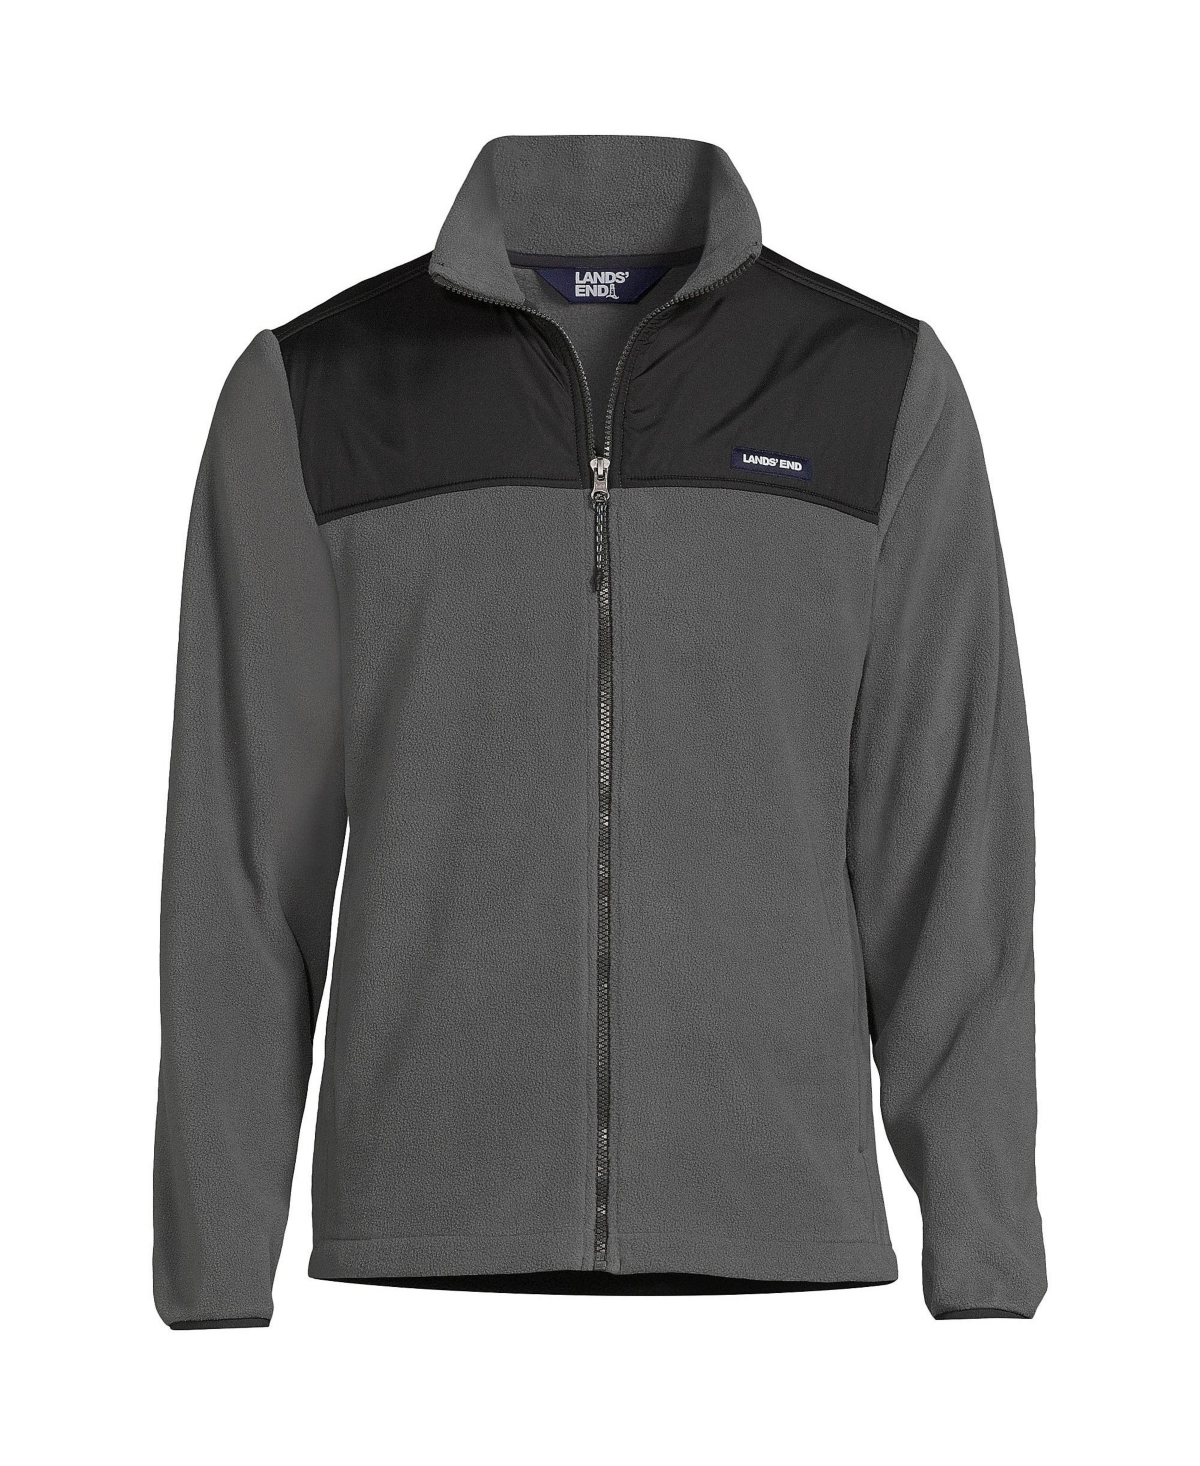 Men's Tall Fleece Full Zip Jacket - Warm graphite